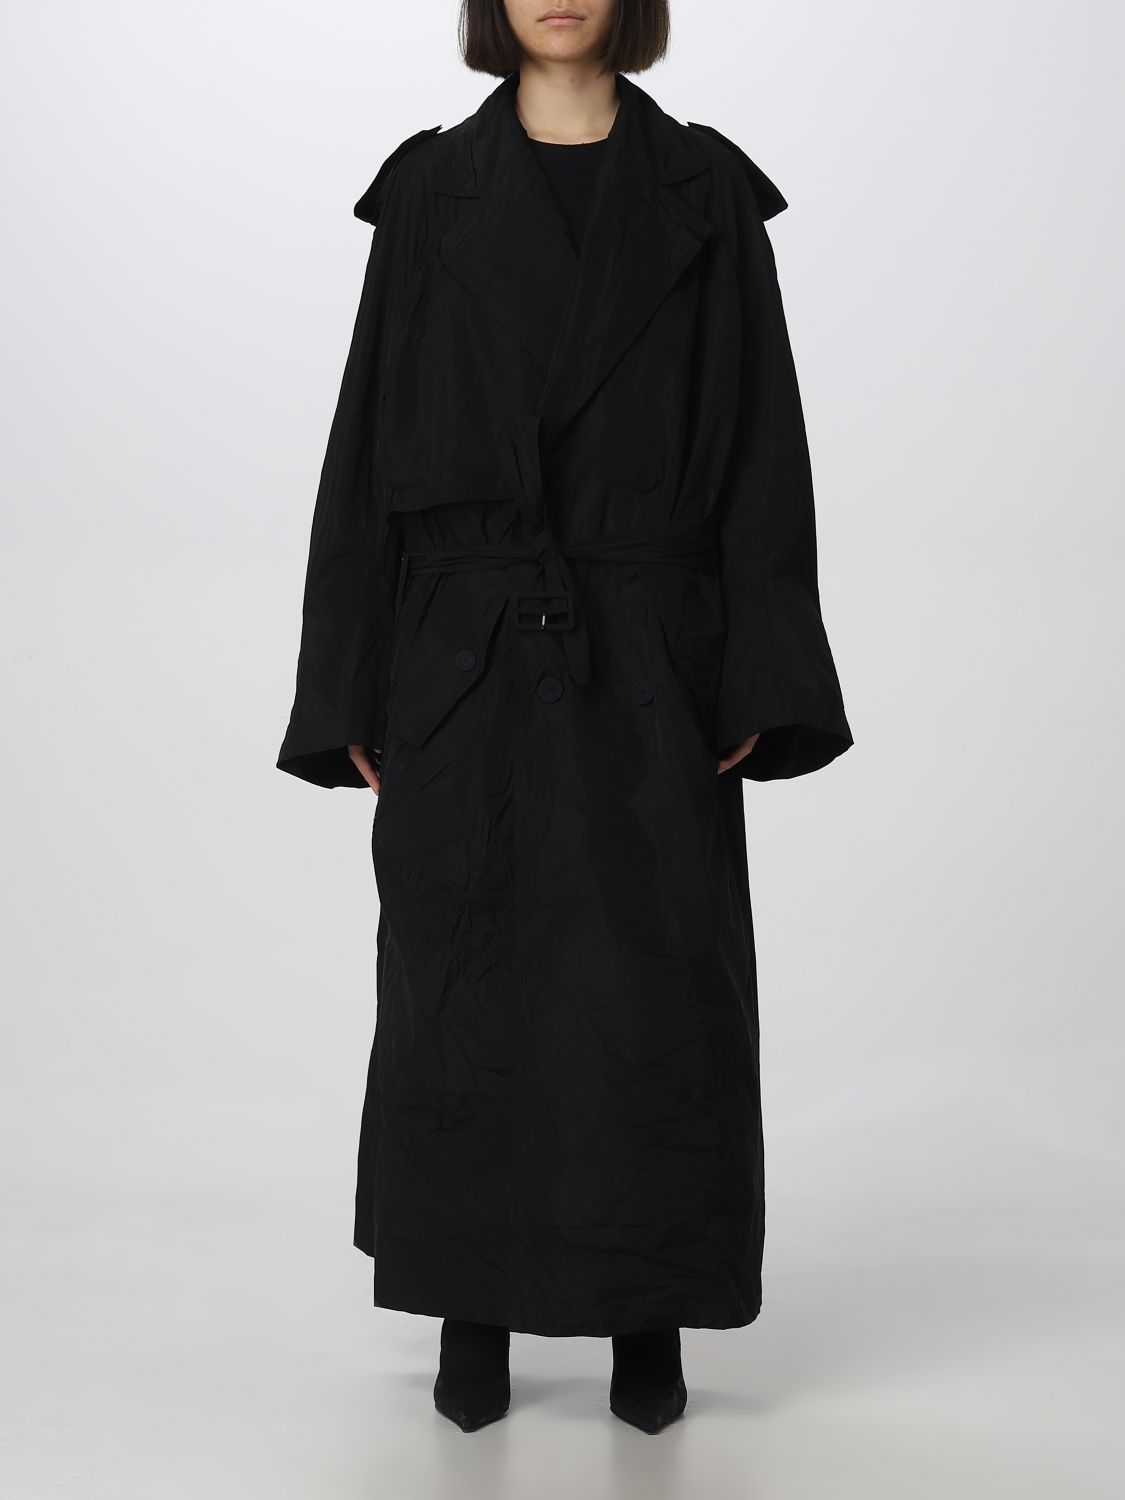 BALENCIAGA: coat for woman - Black | Balenciaga coat 720148 TMO05 ...